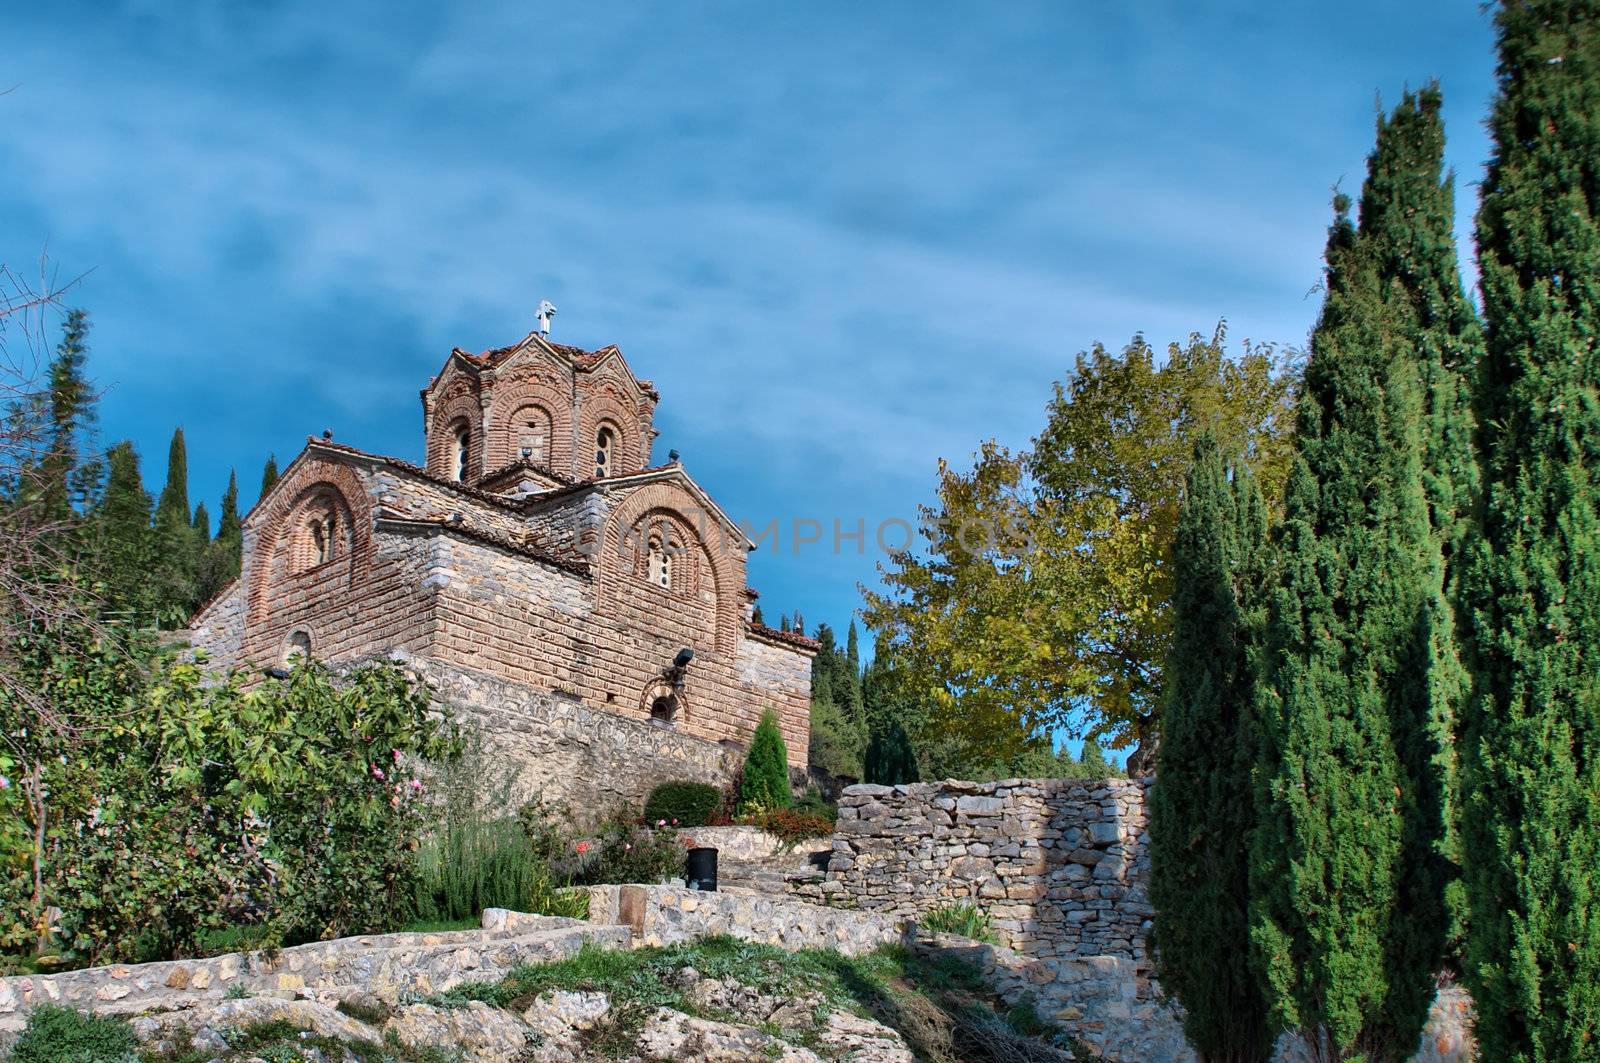 old ancient church St. John / Jovan Kaneo lower view at lake Ohrid, Macedonia between the trees